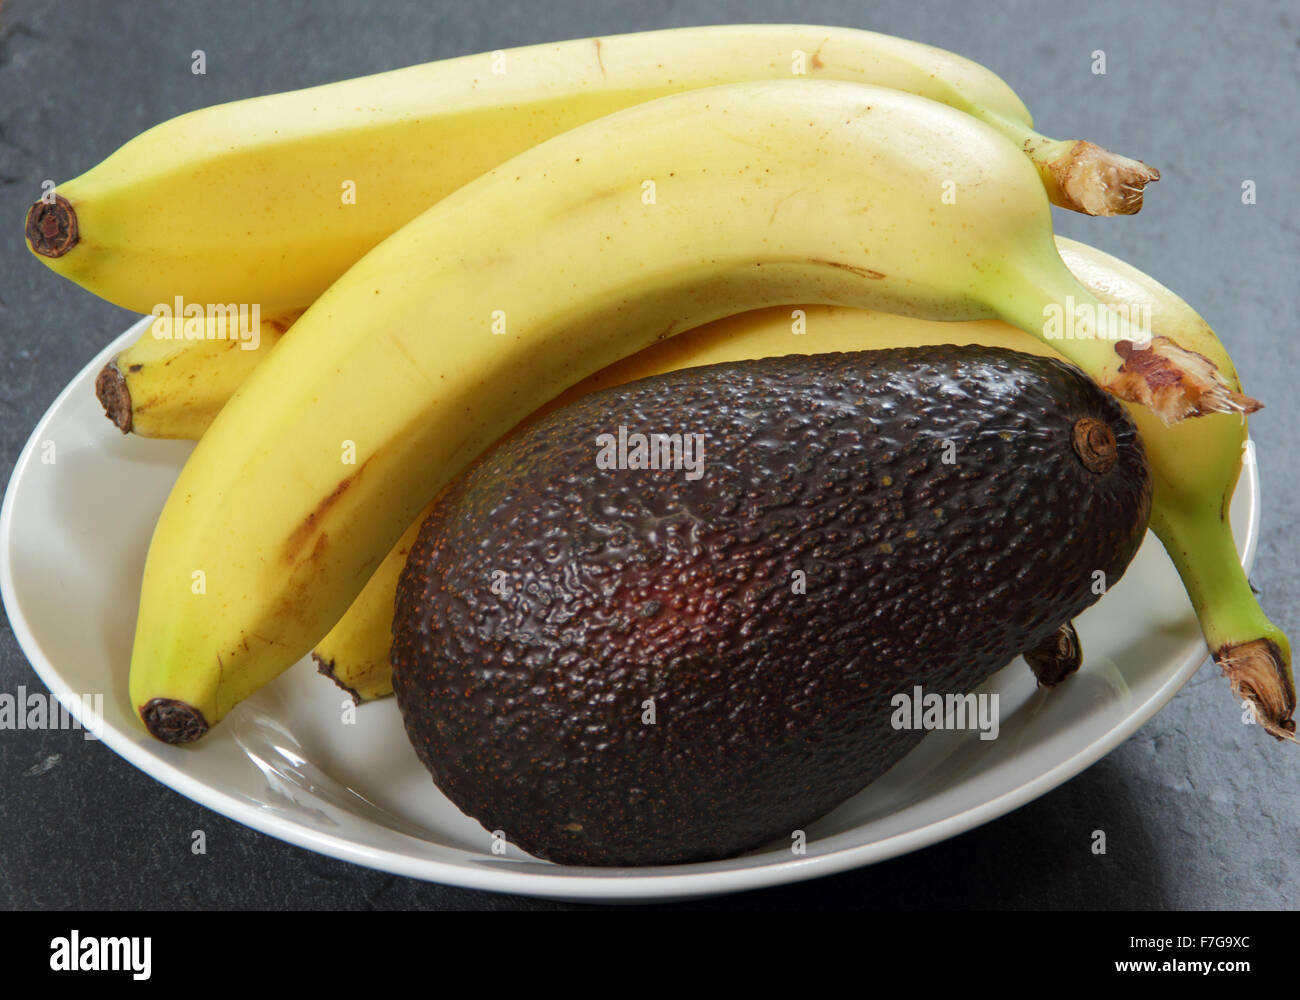 Bananen in eine Schüssel mit Avocado, die Reifung zu beschleunigen verarbeiten - häusliche Umgebung, UK Stockfoto